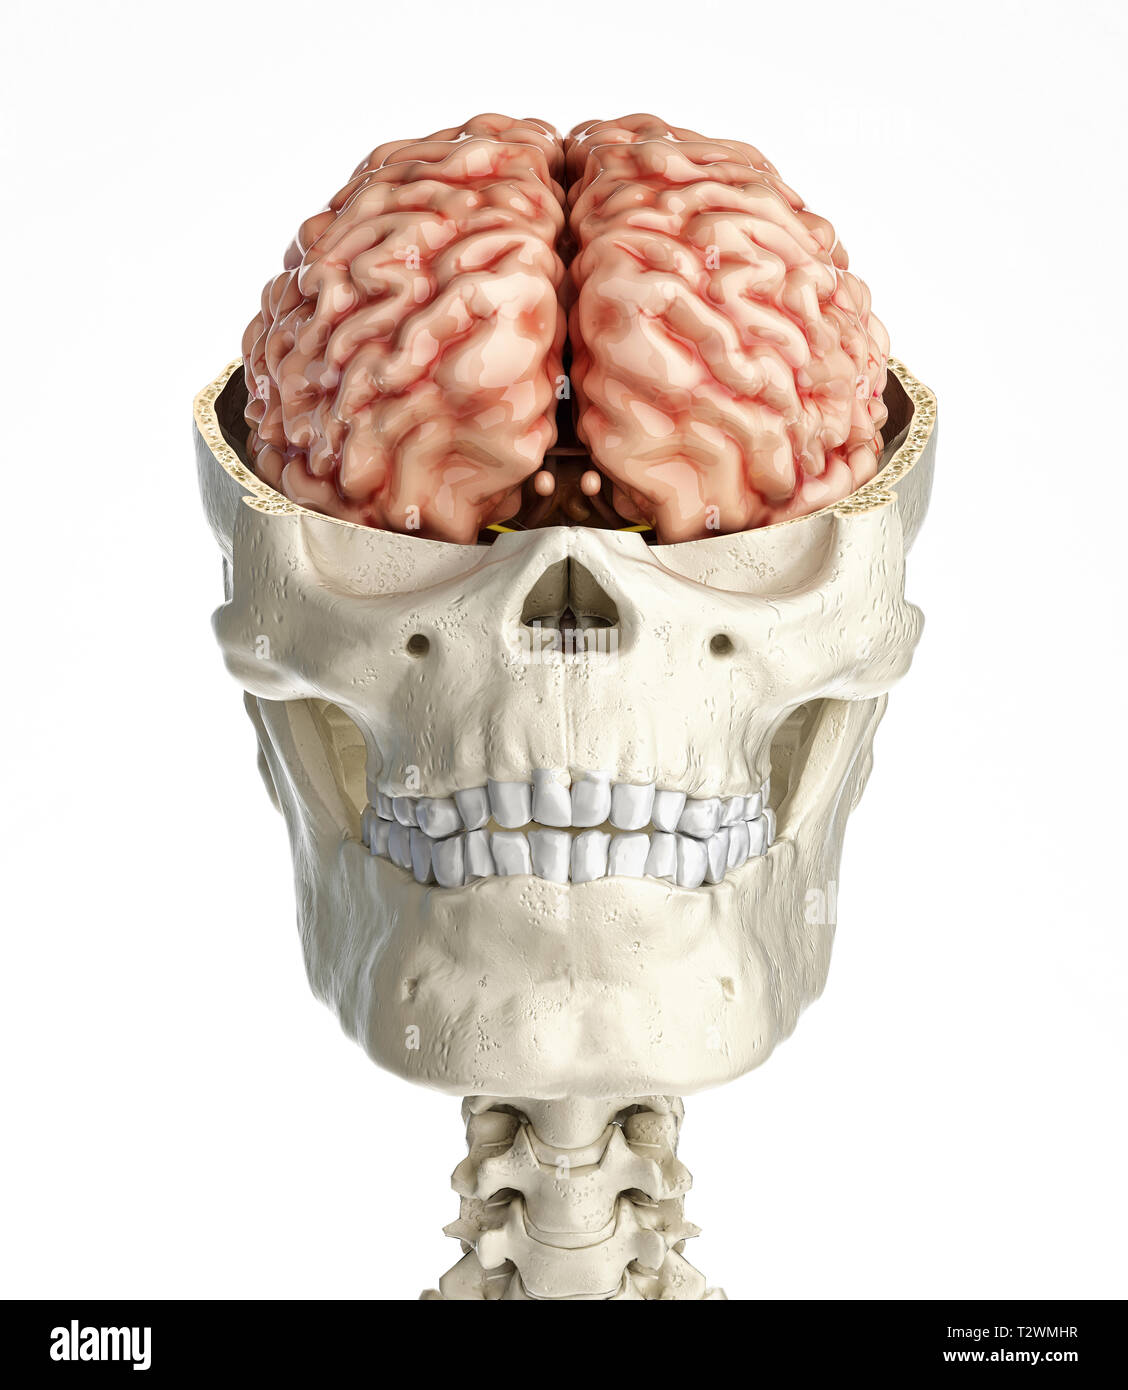 Crâne humain en coupe transversale avec le cerveau. Vue de face sur fond blanc. Banque D'Images